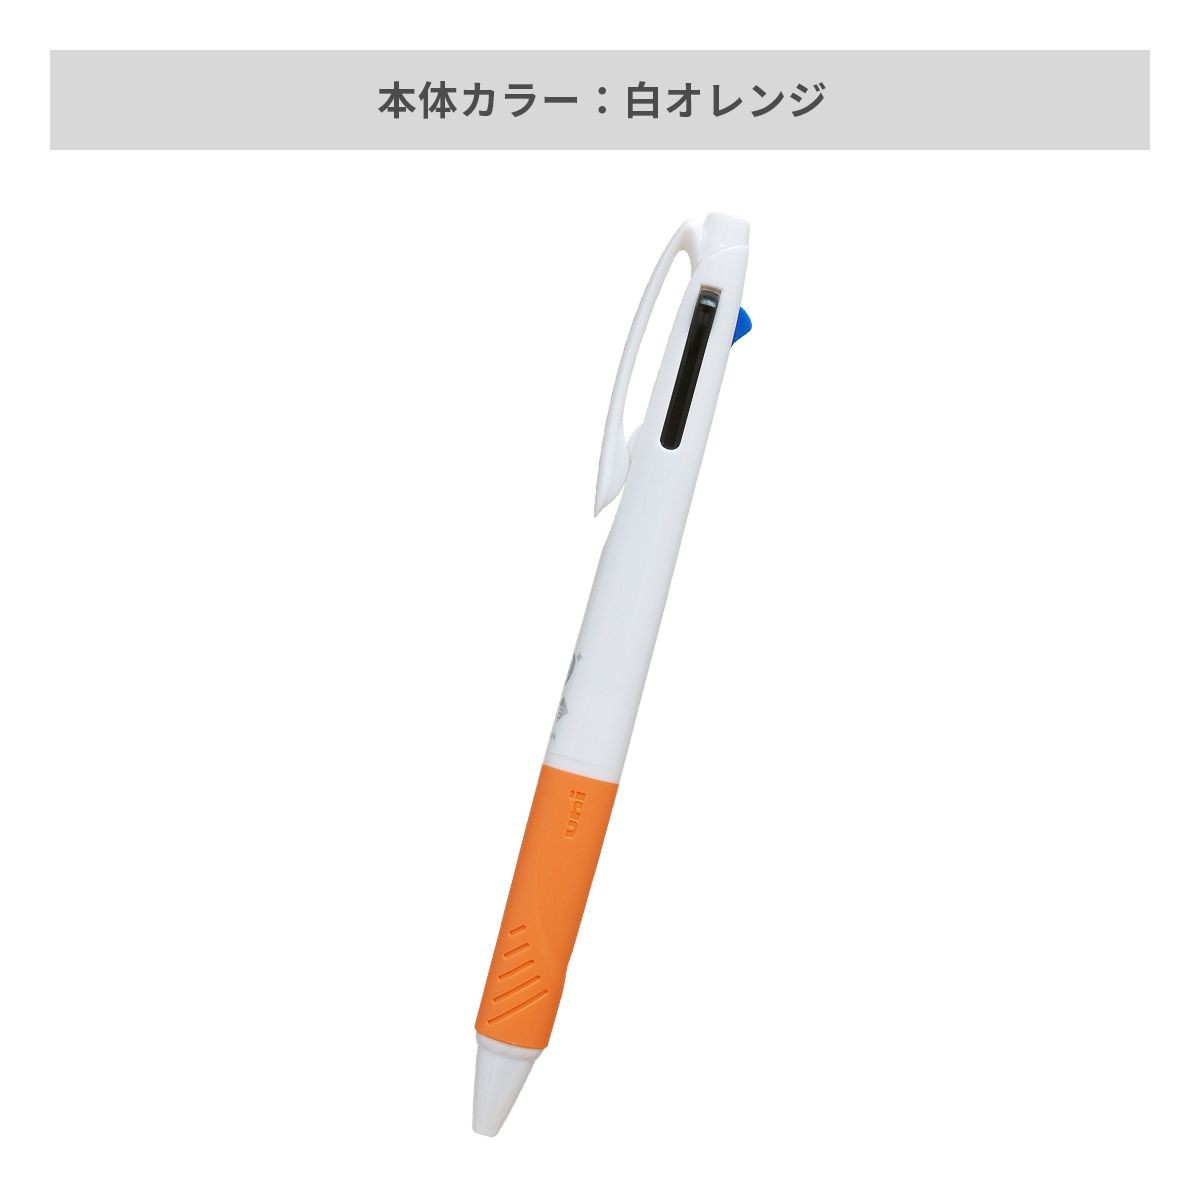 三菱鉛筆 ジェットストリーム 3色ボールペン AGピュア抗菌 白軸 0.7mm【名入れボールペン / パッド印刷】 画像5